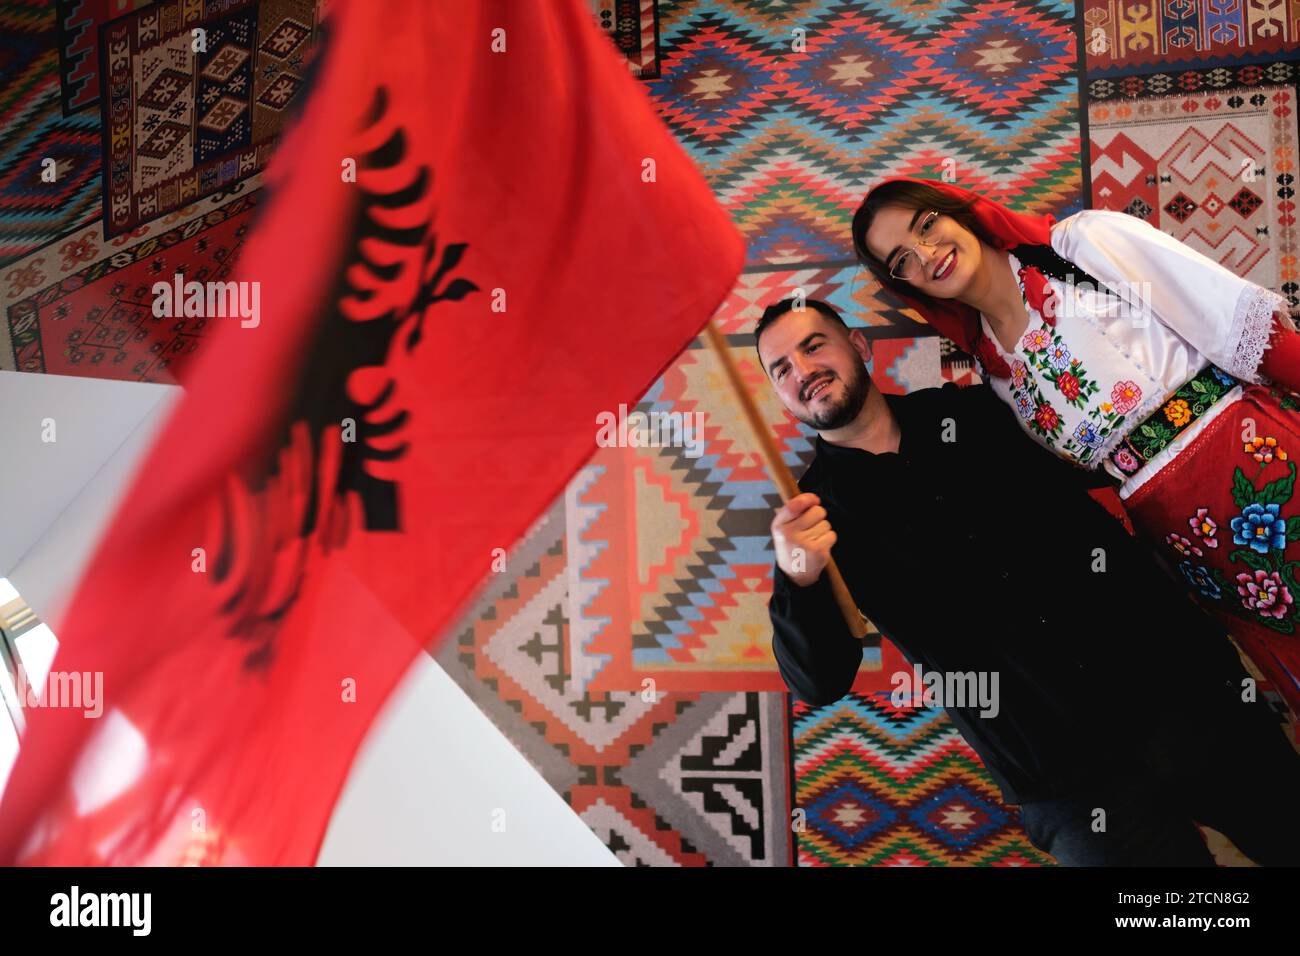 Tirana, Albanien – 28. November: Eine Frau und ein Mann in traditioneller albanischer Kleidung, die mit einer Flagge vor traditionellen Mustern posieren Stockfoto